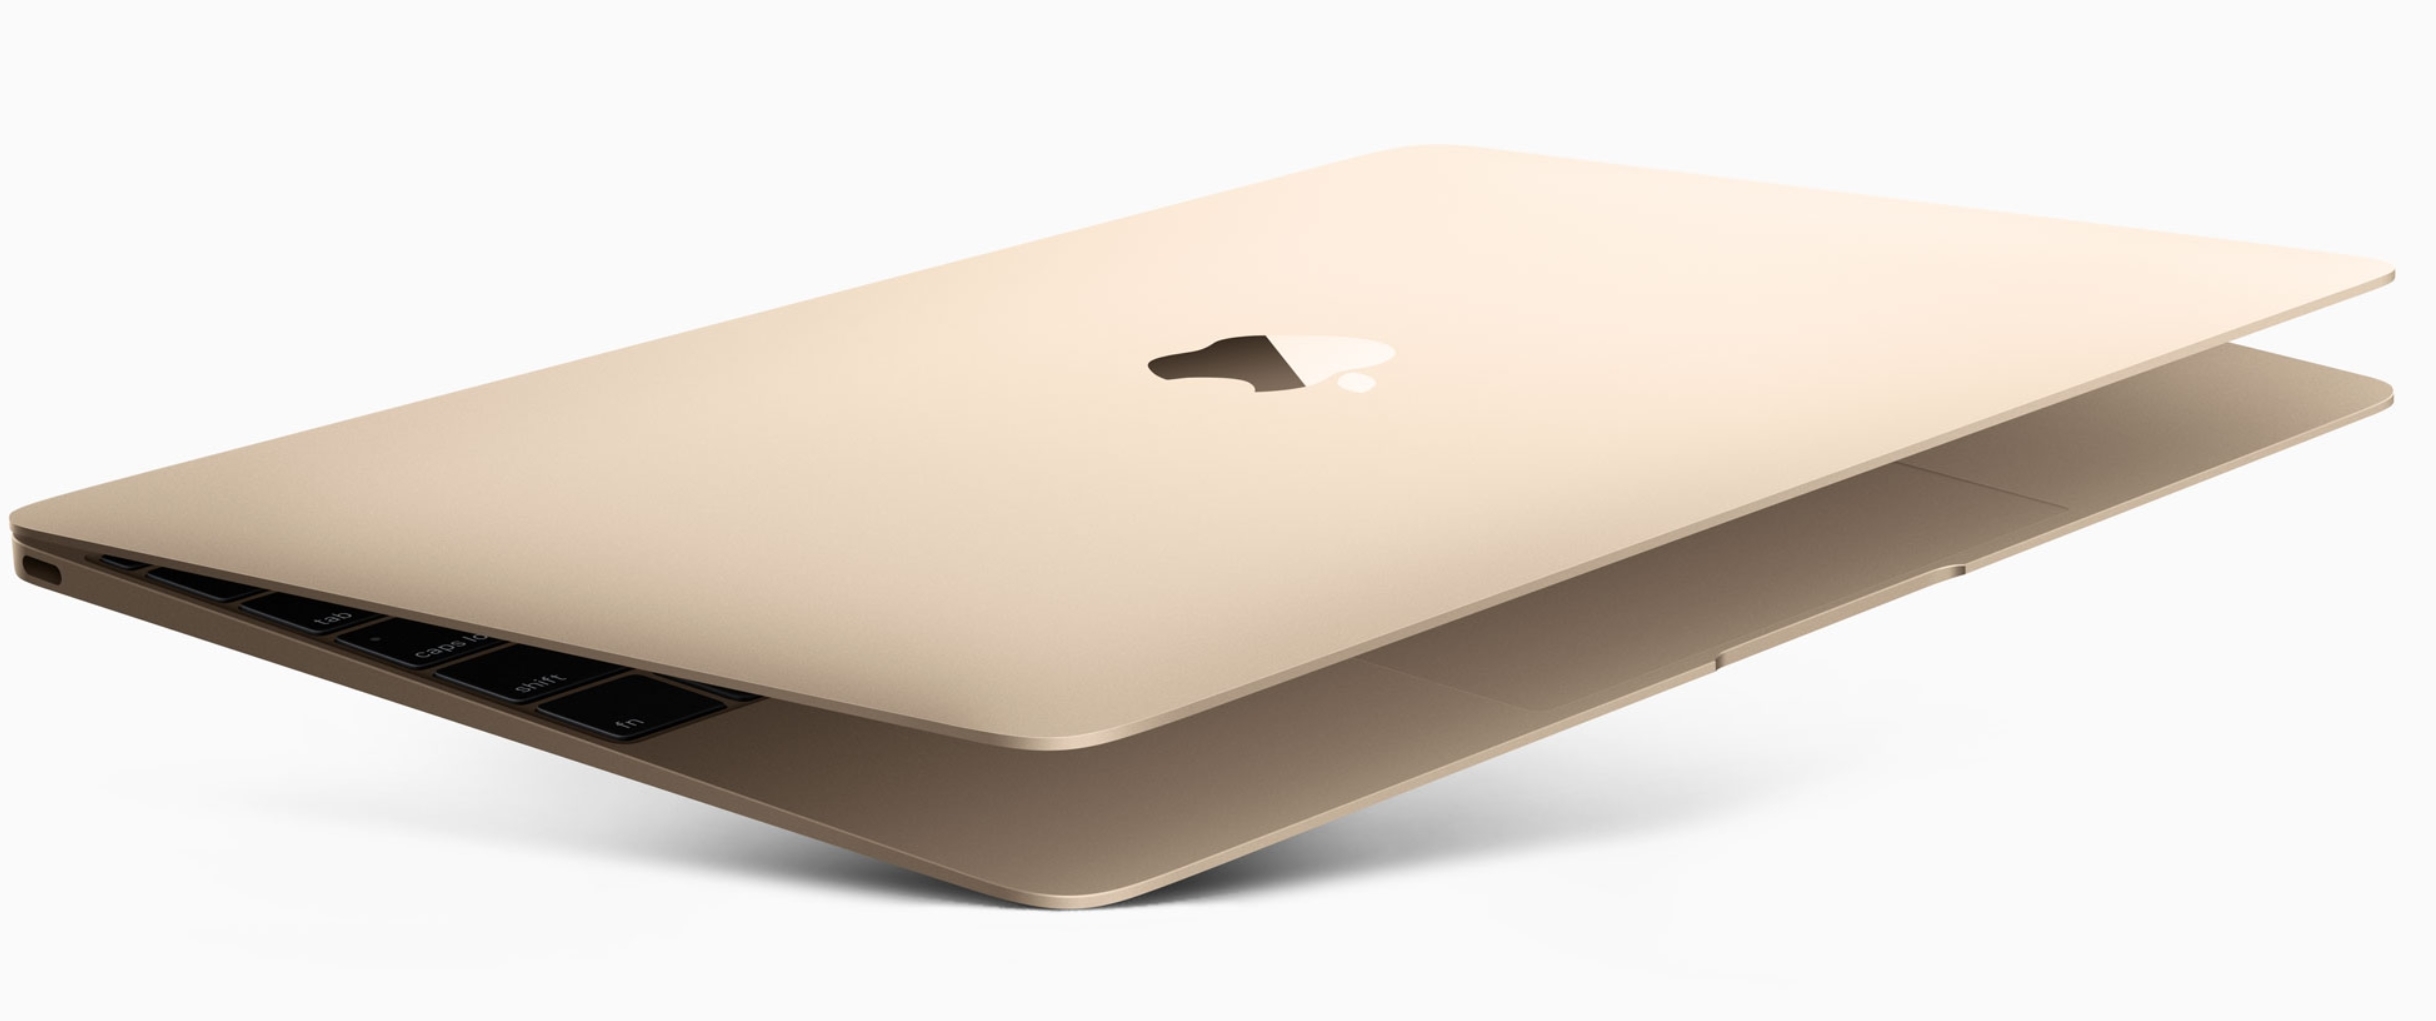 Slik blir trolig Apple helt nye laptop